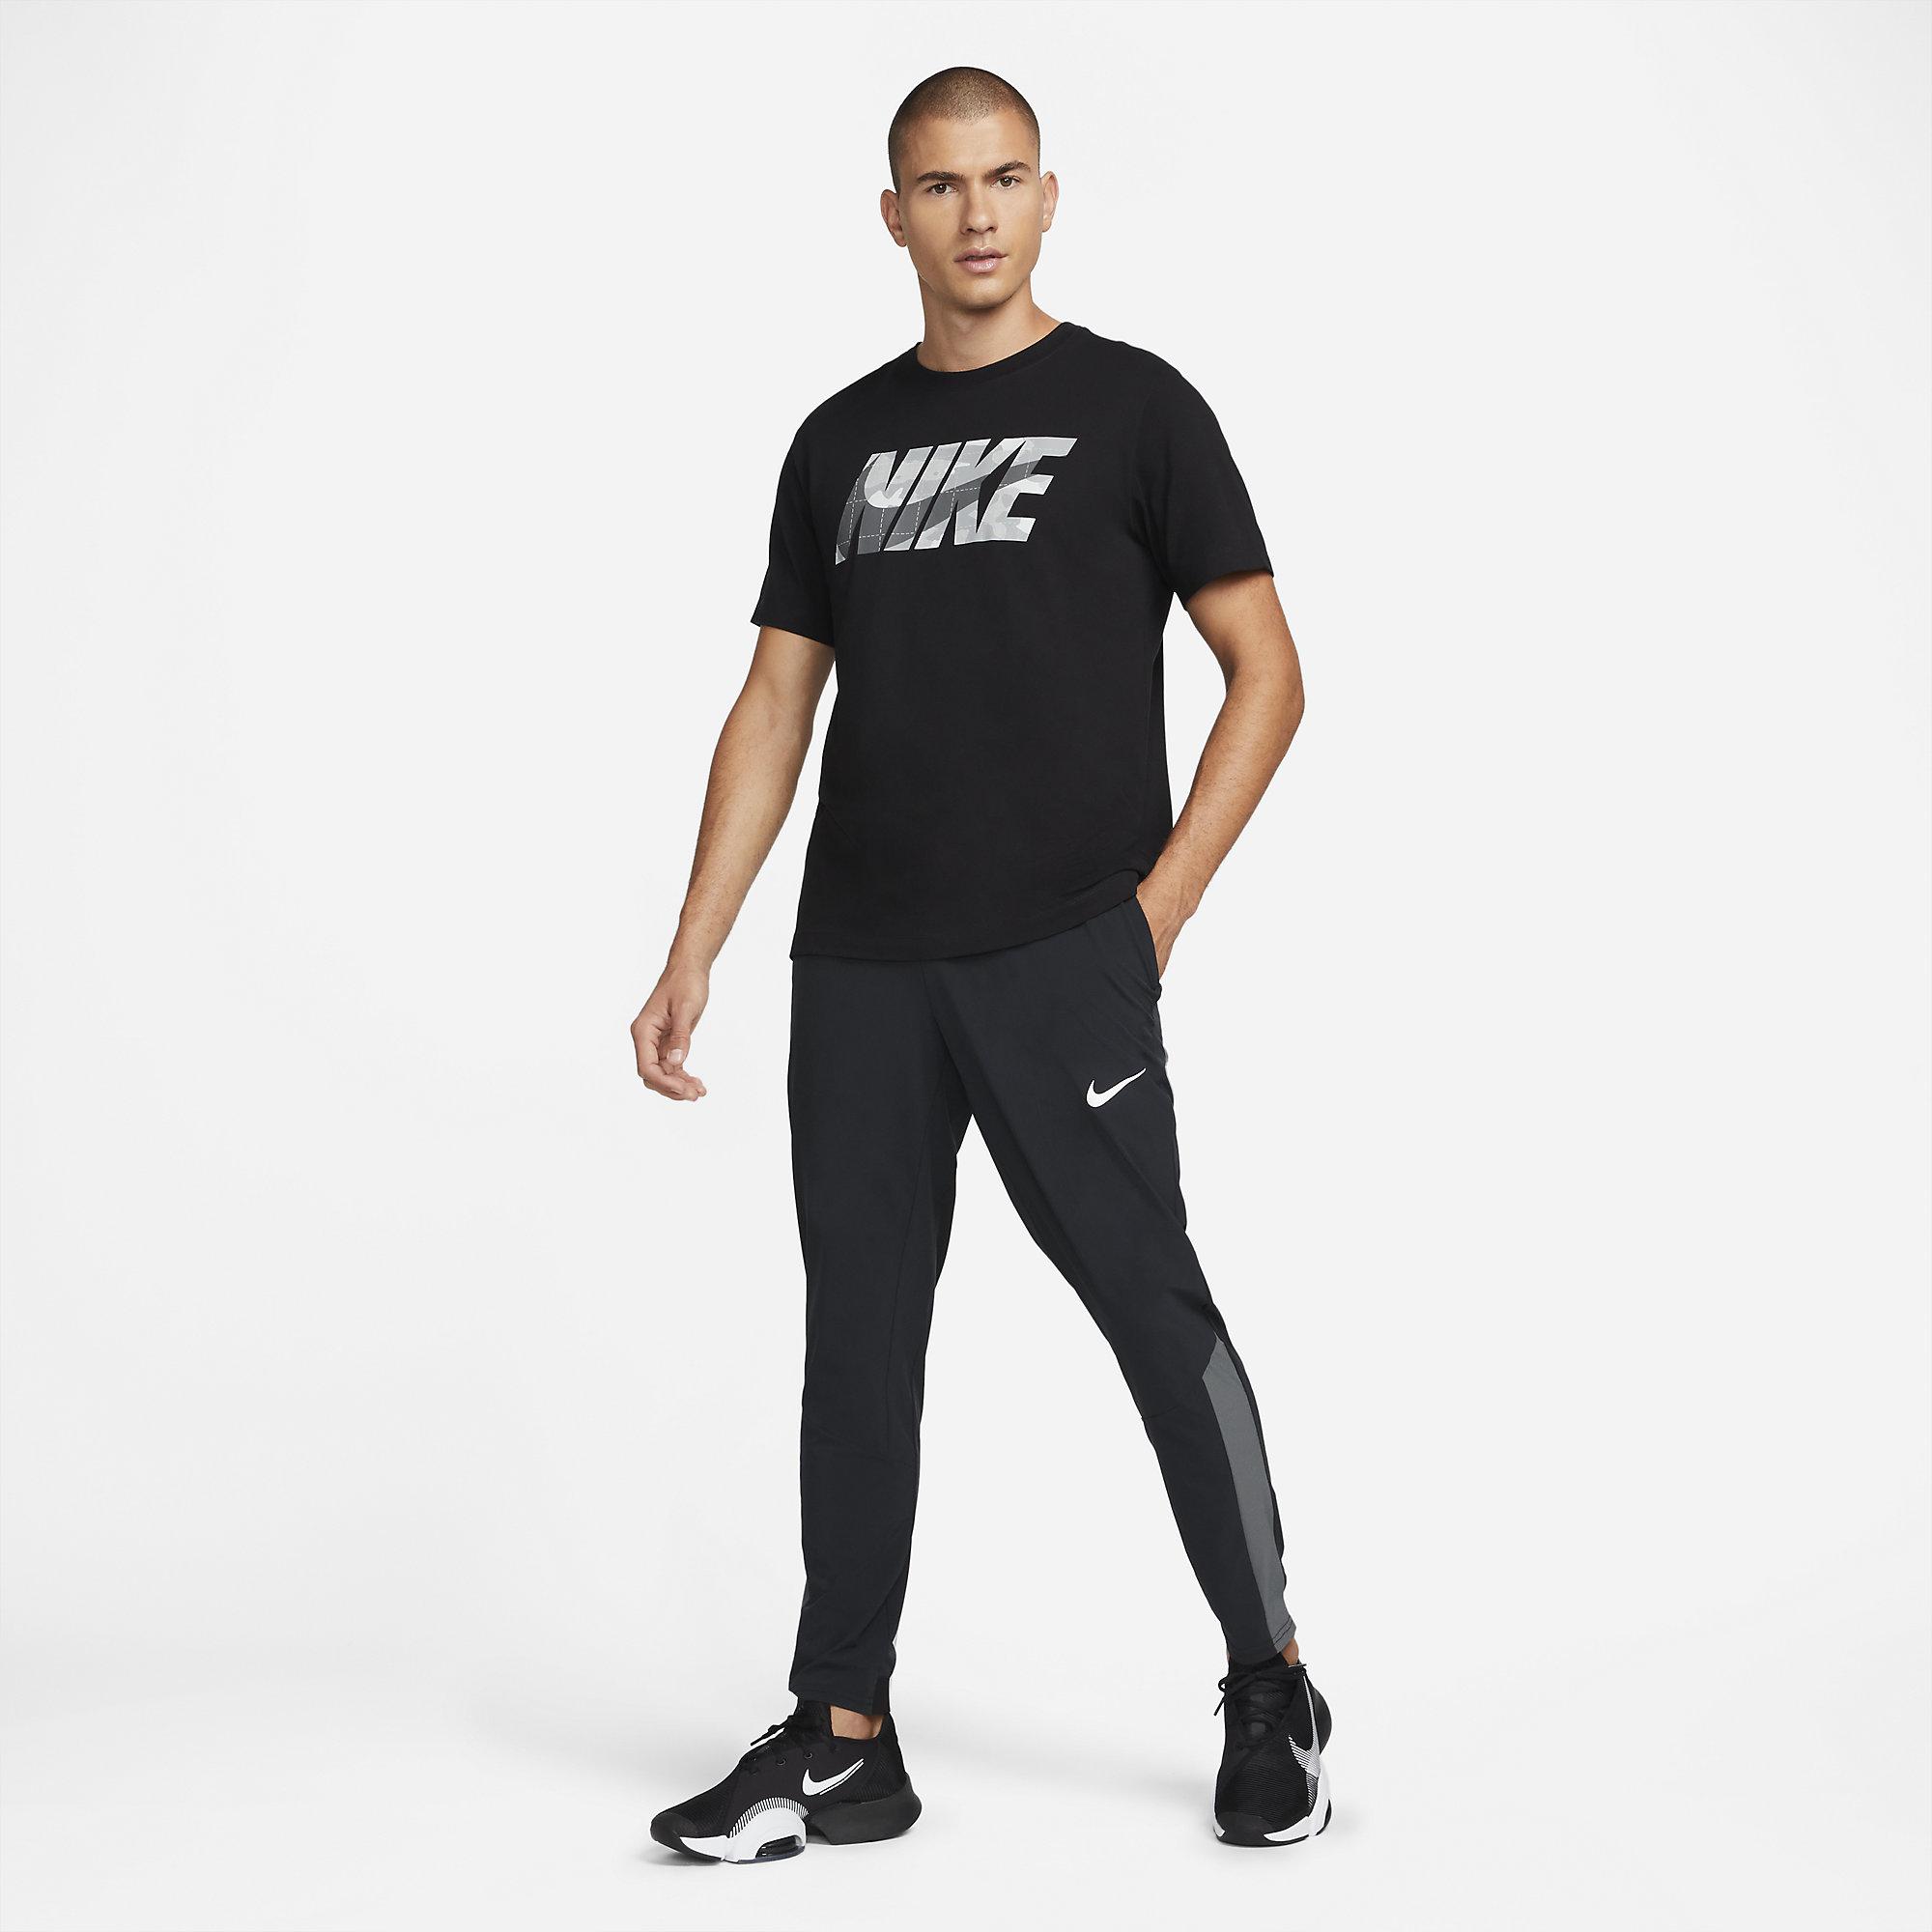 Nike Mens Vent Max Pants - Black - Tennisnuts.com